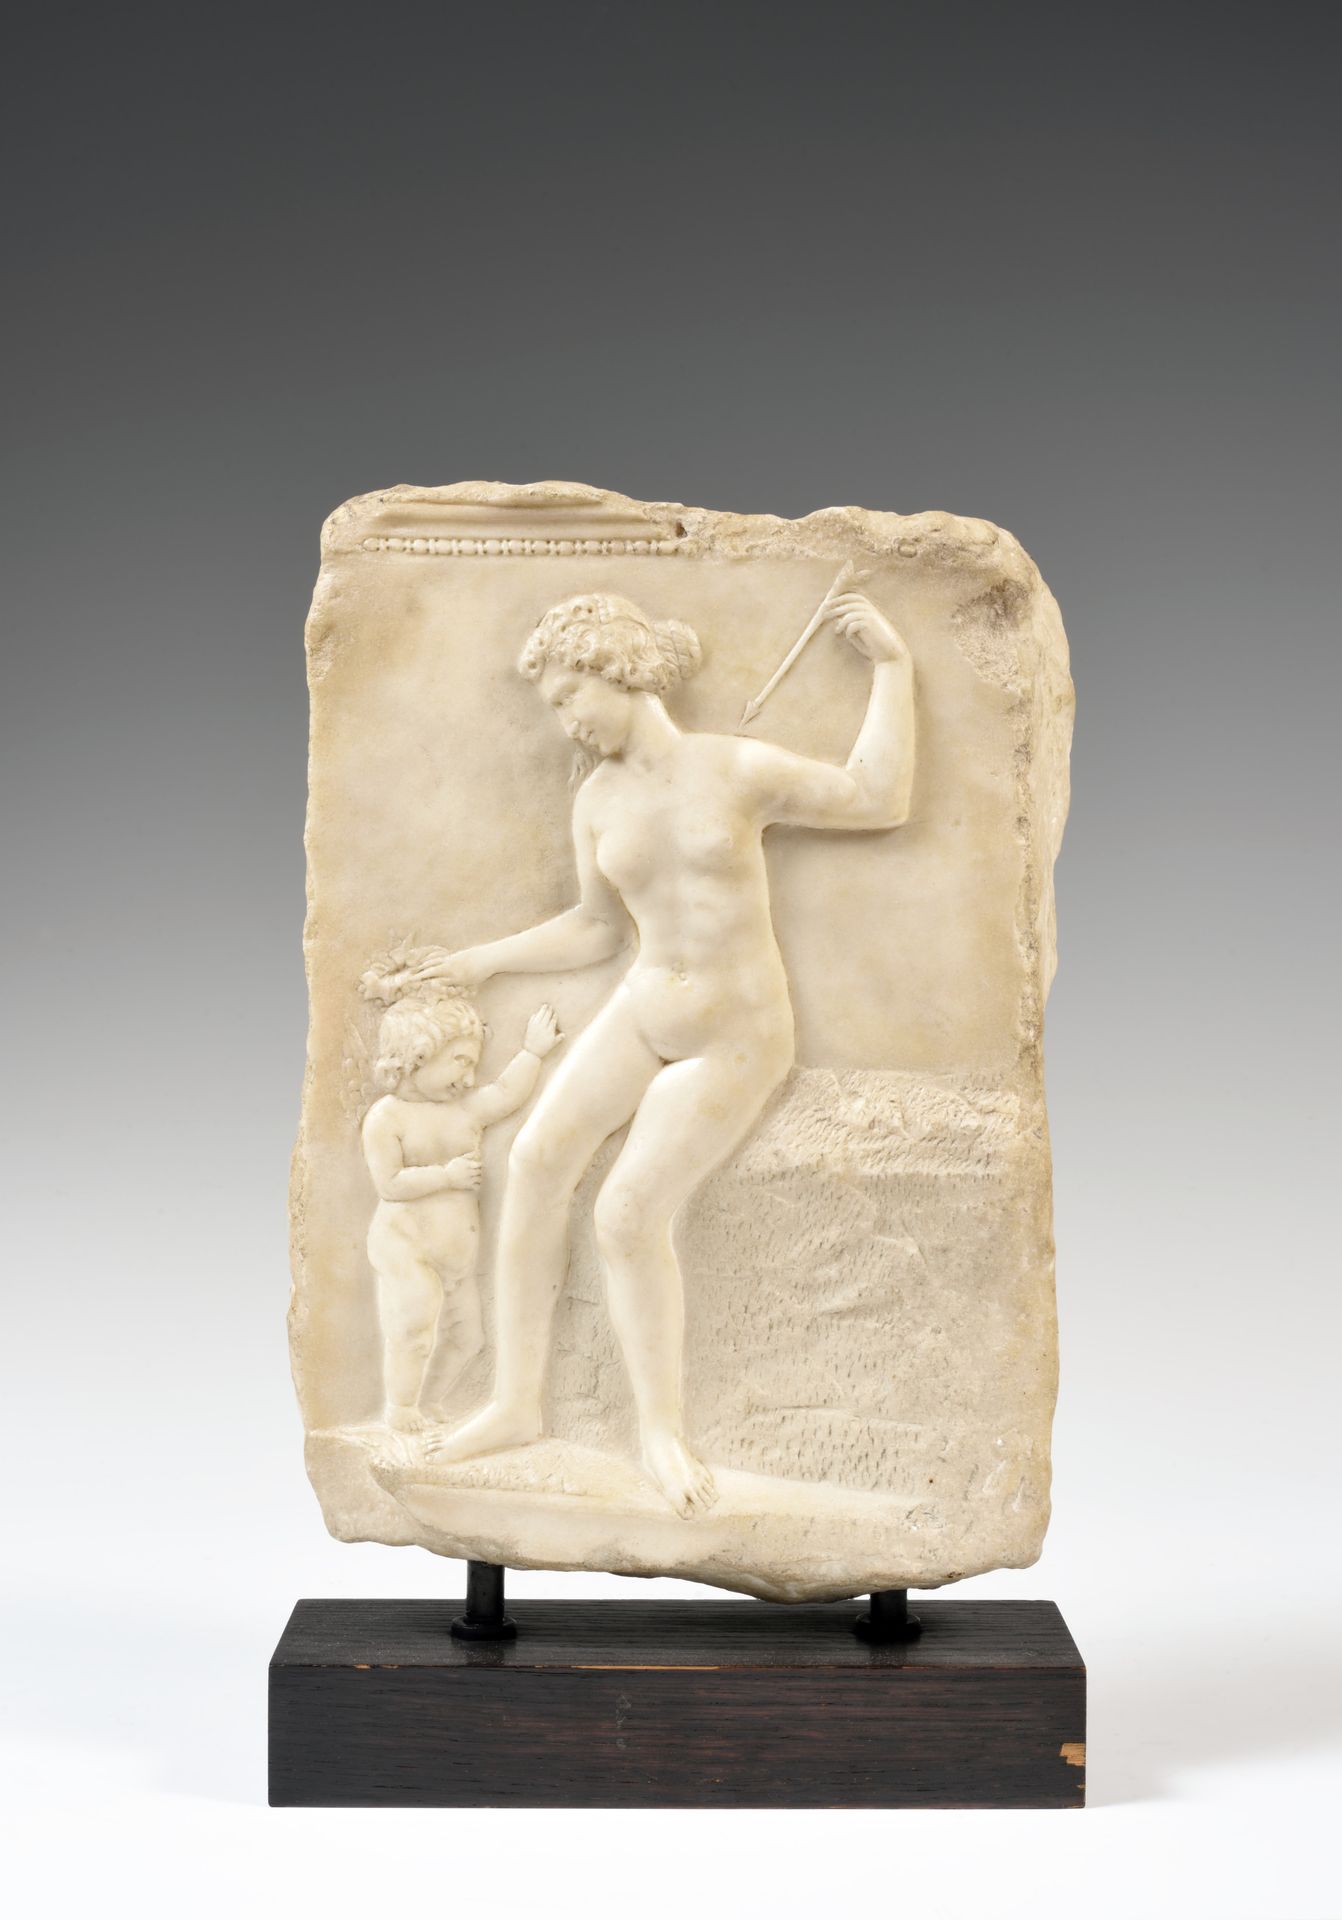 Null 大理石浮雕，木质底座上的阿特米斯和一个孩子

20 x 28 x 5厘米